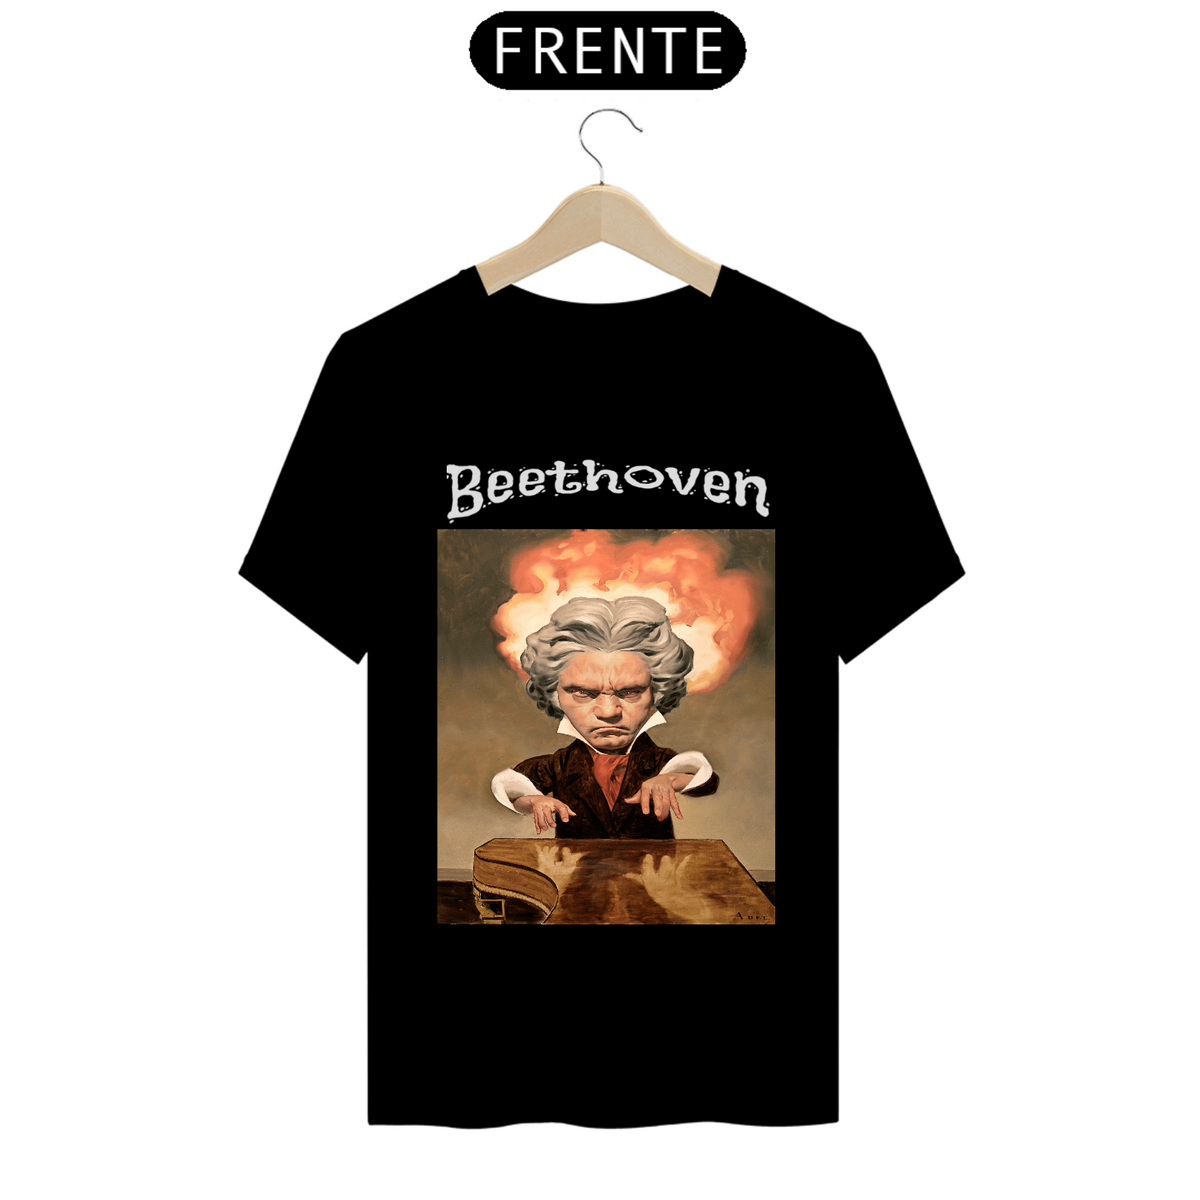 Nome do produto: Beethoven